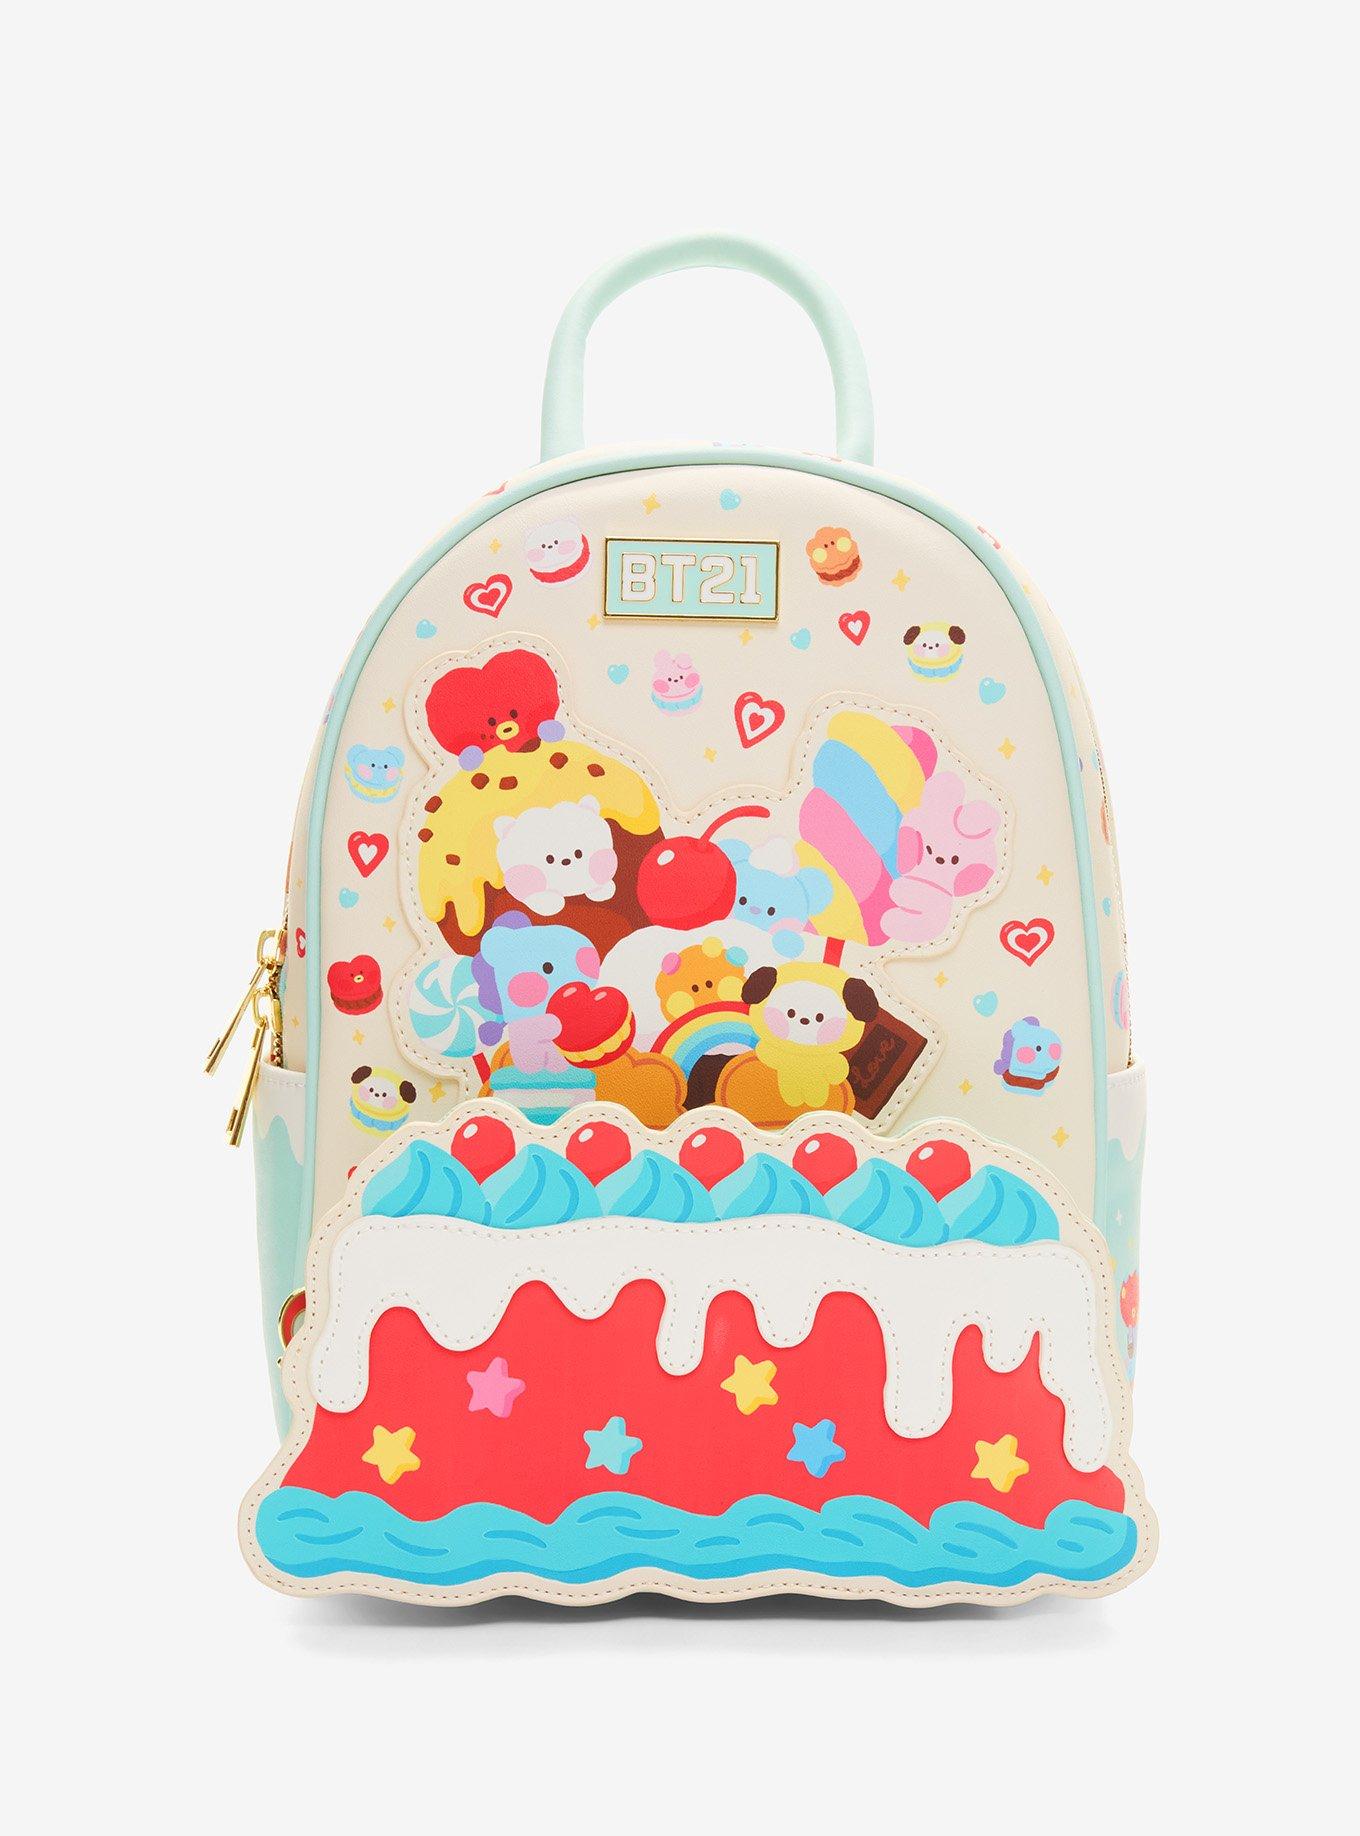 Nwt Kpop BTS Galaxy Backpacks Bag School